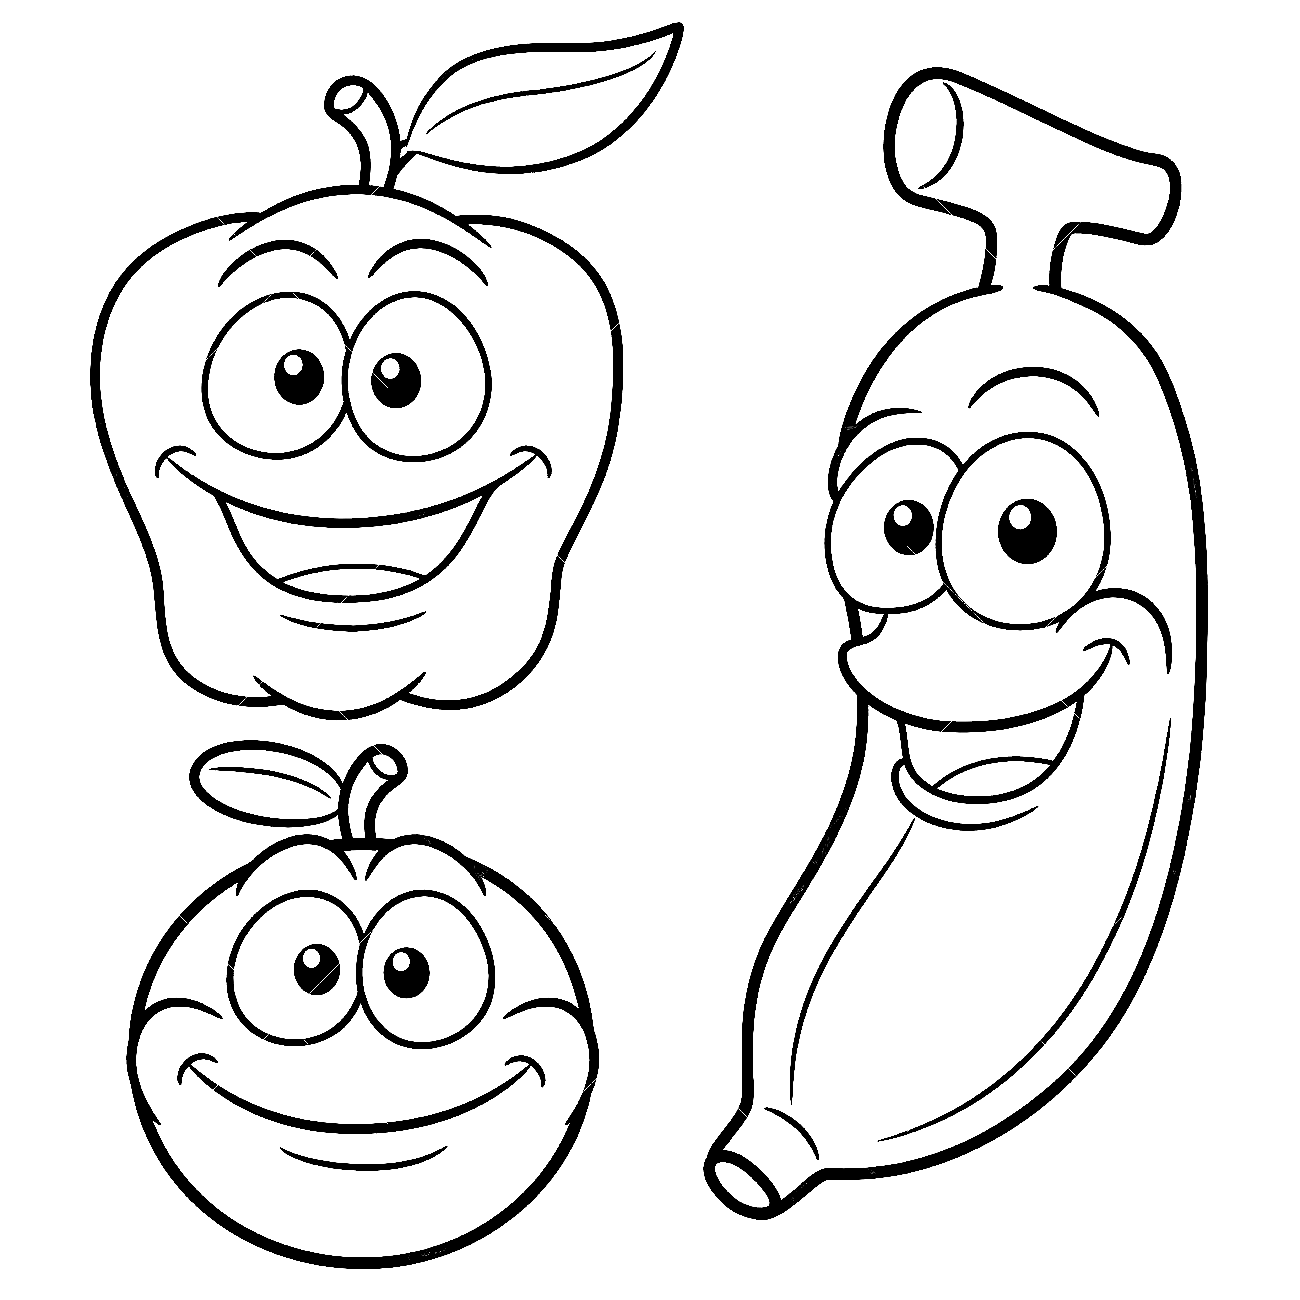 苹果公司的快乐卡通水果